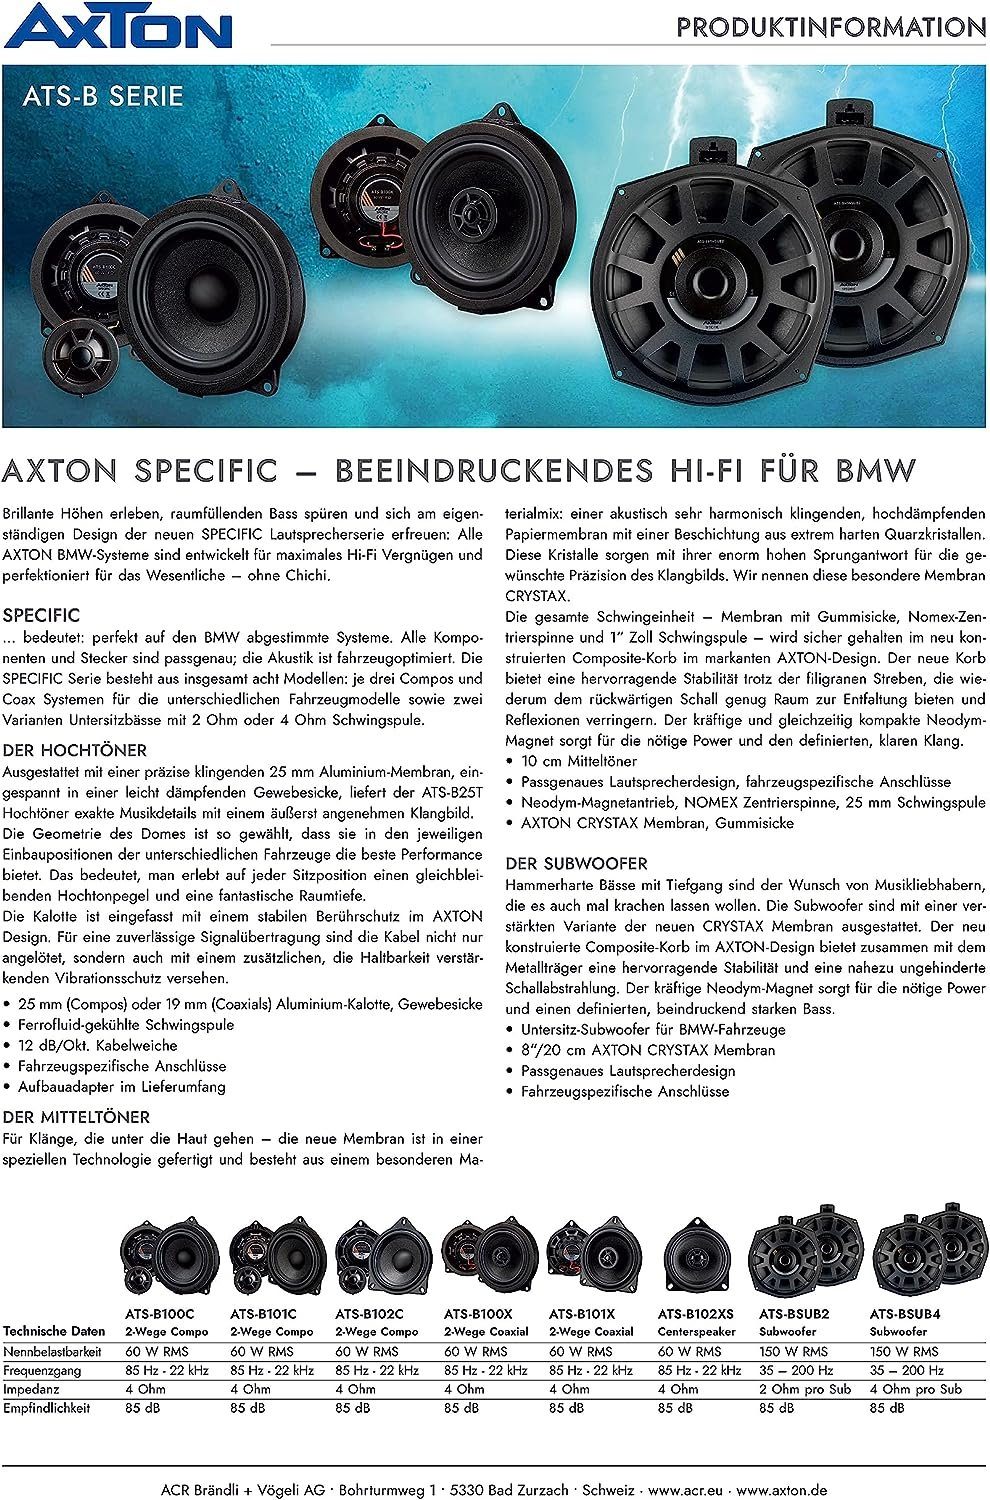 2-Wege-Lautsprecher für BMW Axton Auto-Lautsprecher Axton ATS-B101C